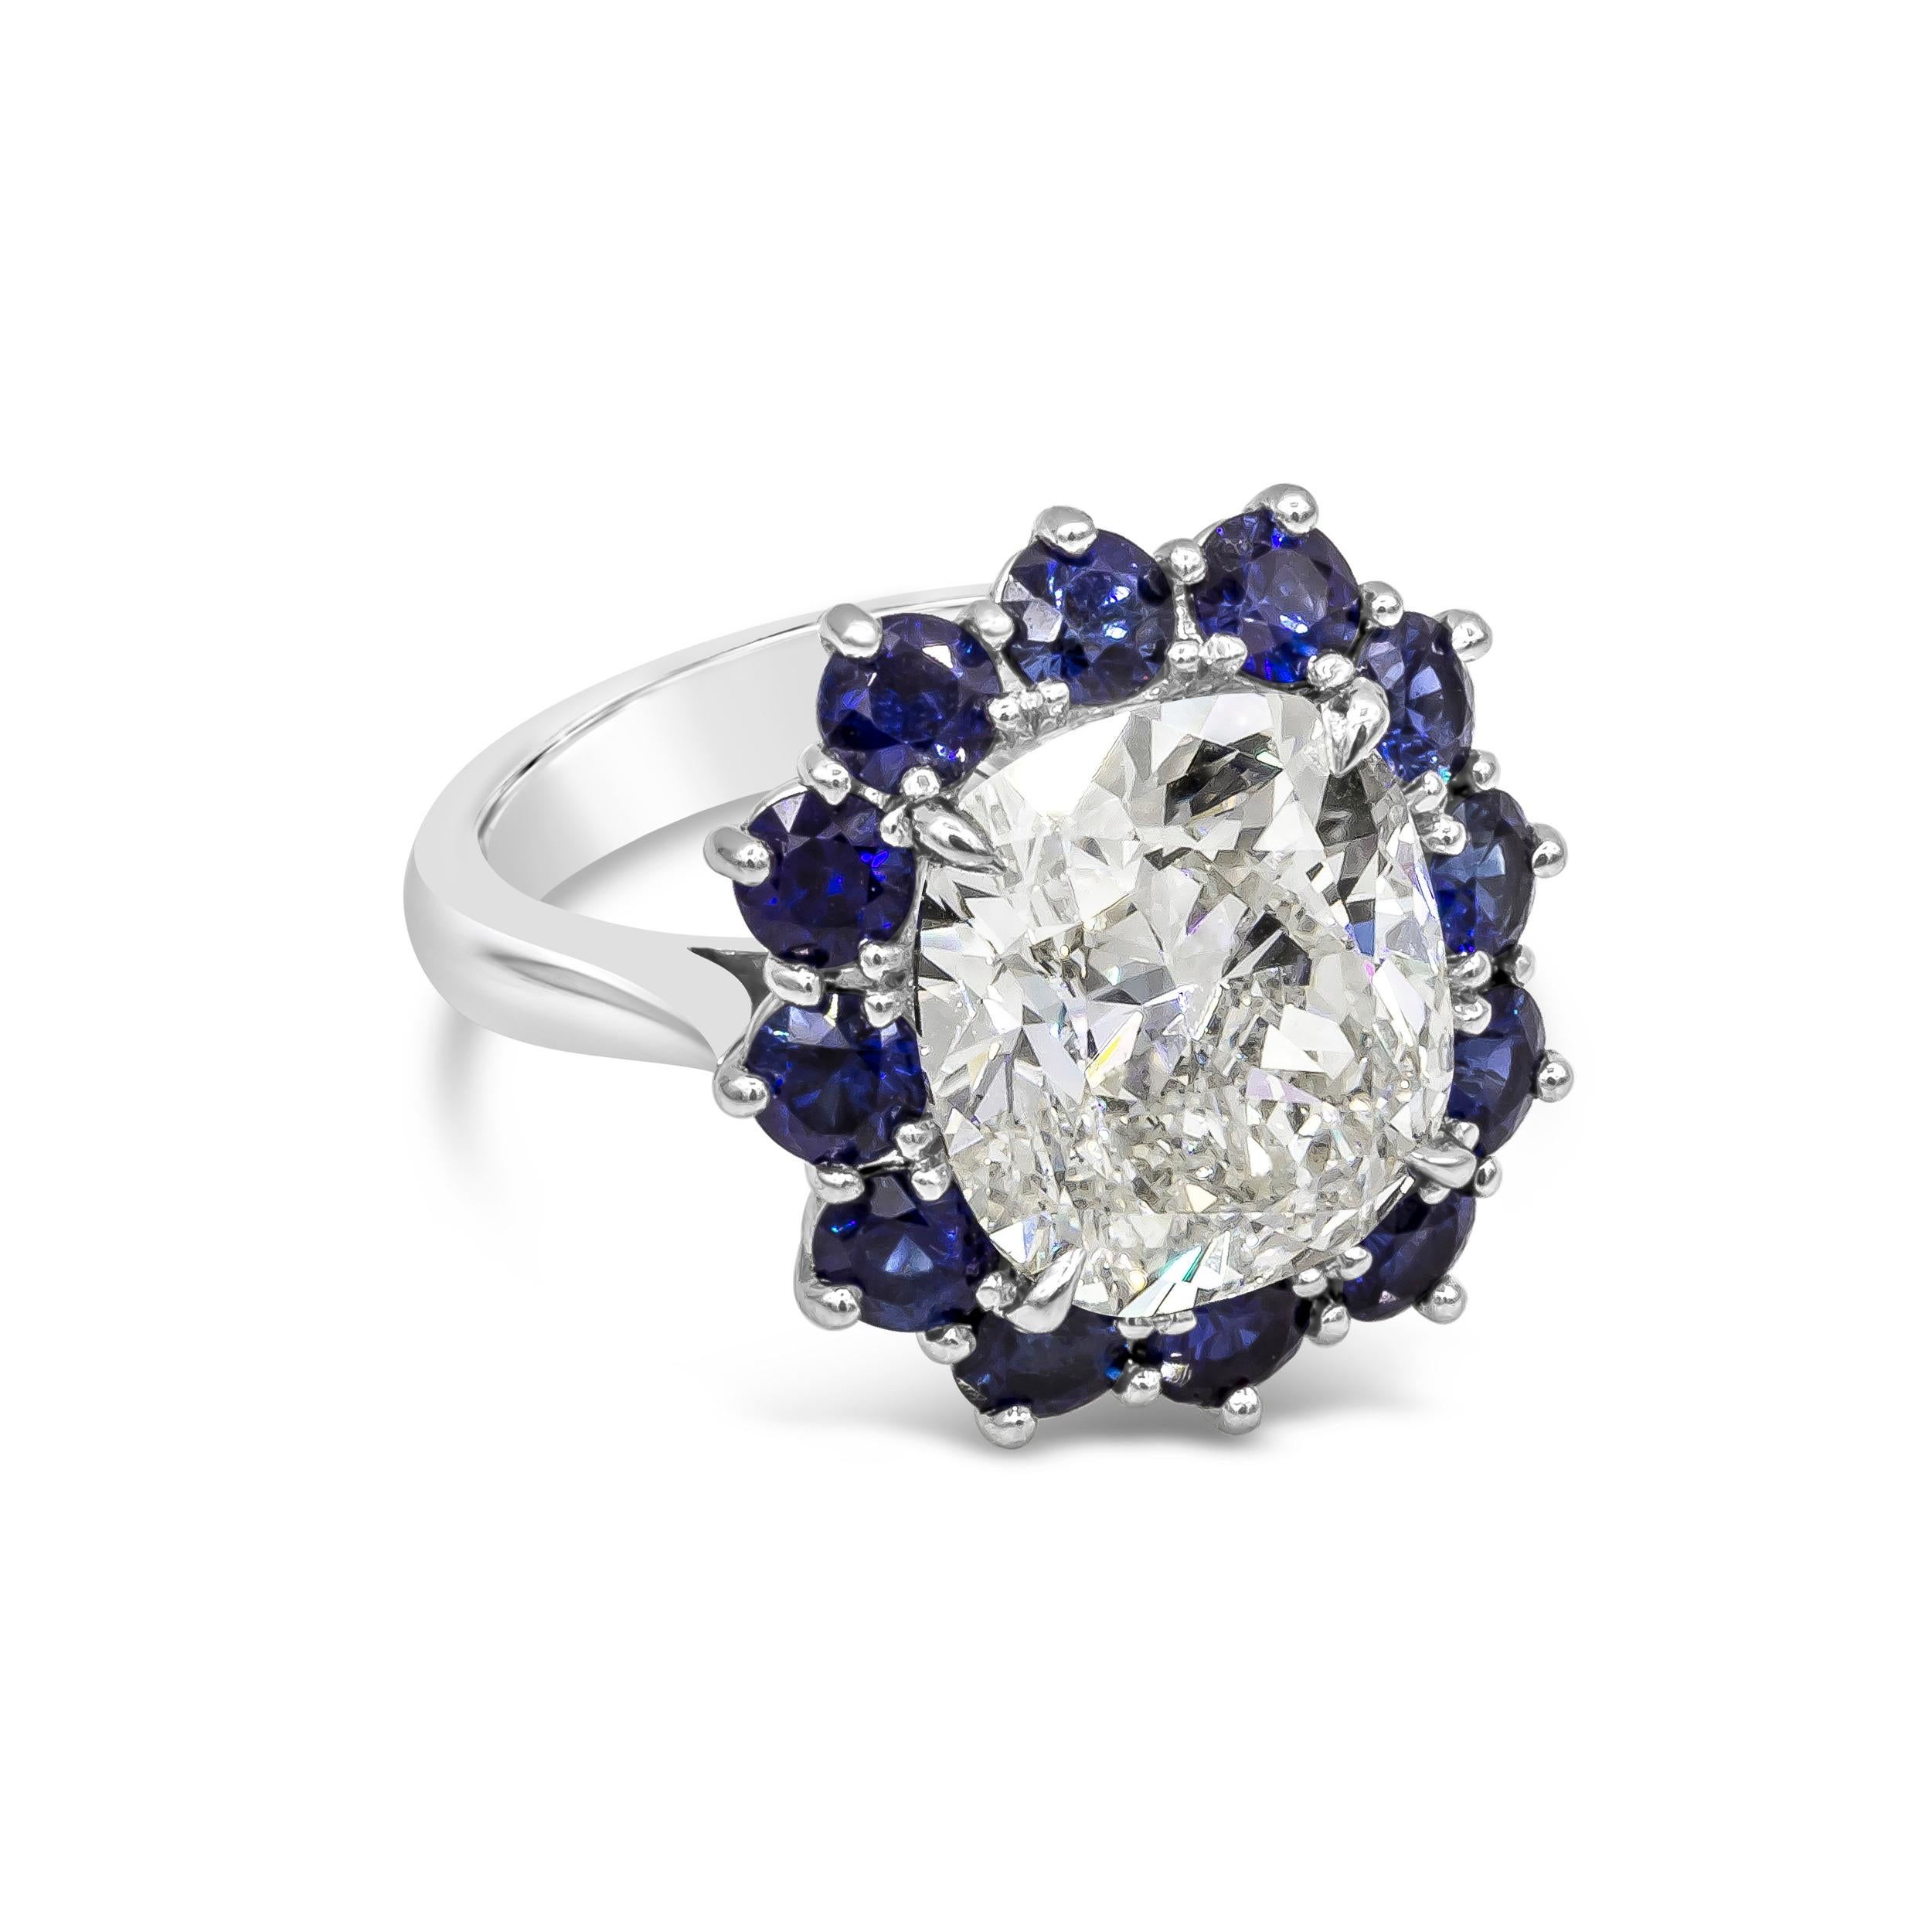 Präsentiert wird ein GIA-zertifizierter Diamant im Kissenschliff mit 7,04 Karat, Farbe K und Reinheit SI1. Umgeben von einer einzigen Reihe blauer Saphire im Rundschliff. Die Saphire wiegen insgesamt 2,60 Karat. Hergestellt mit Platin. Größe 6.25 US